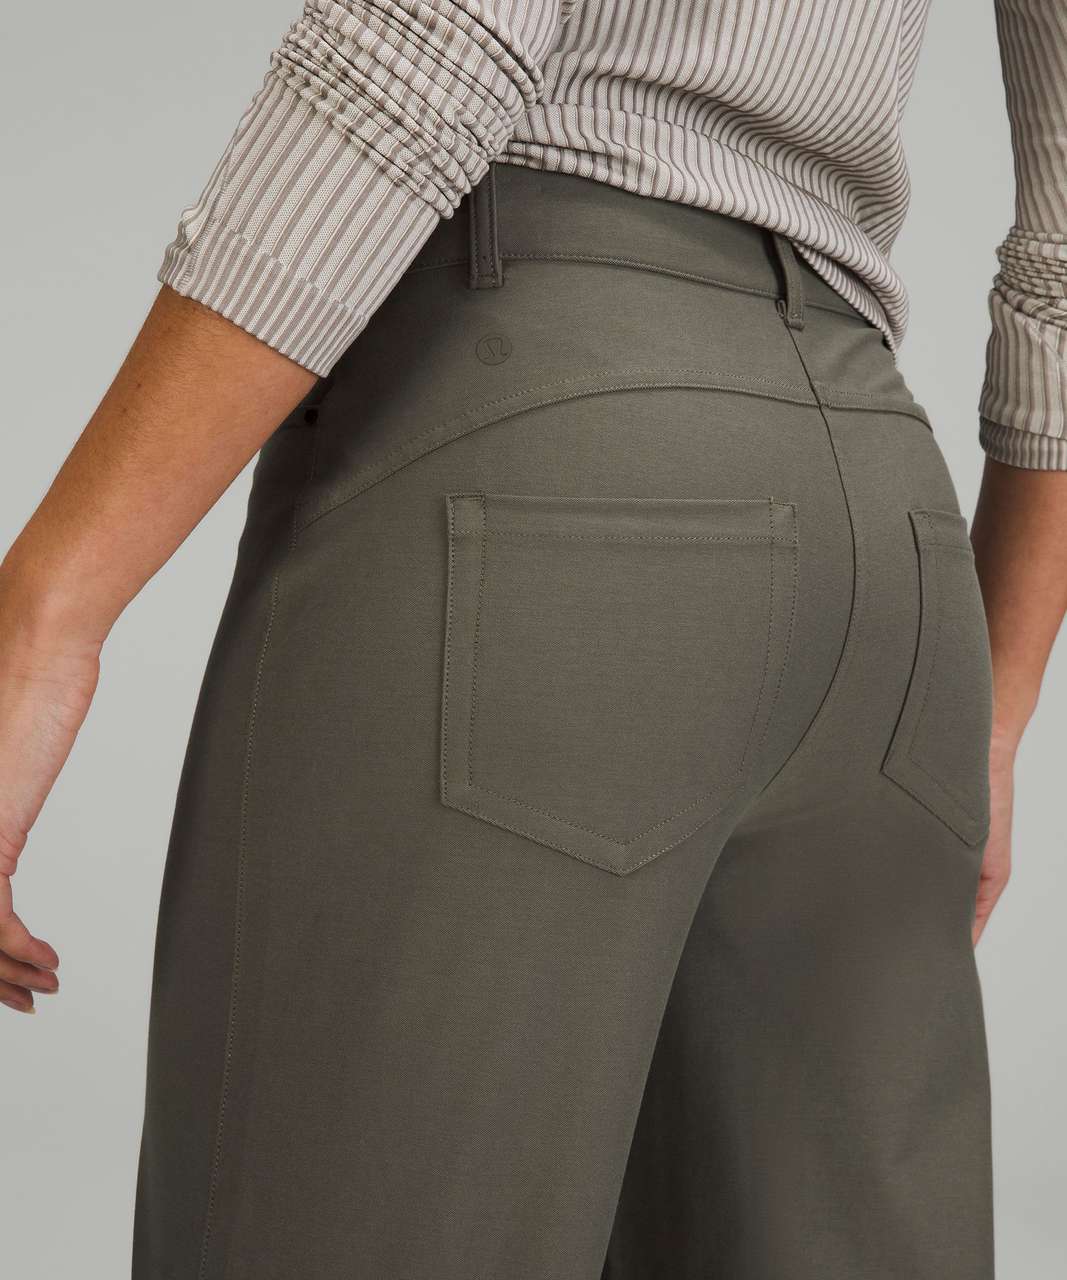  Lululemon City Sleek 5 Pockets Wide Leg : Clothing